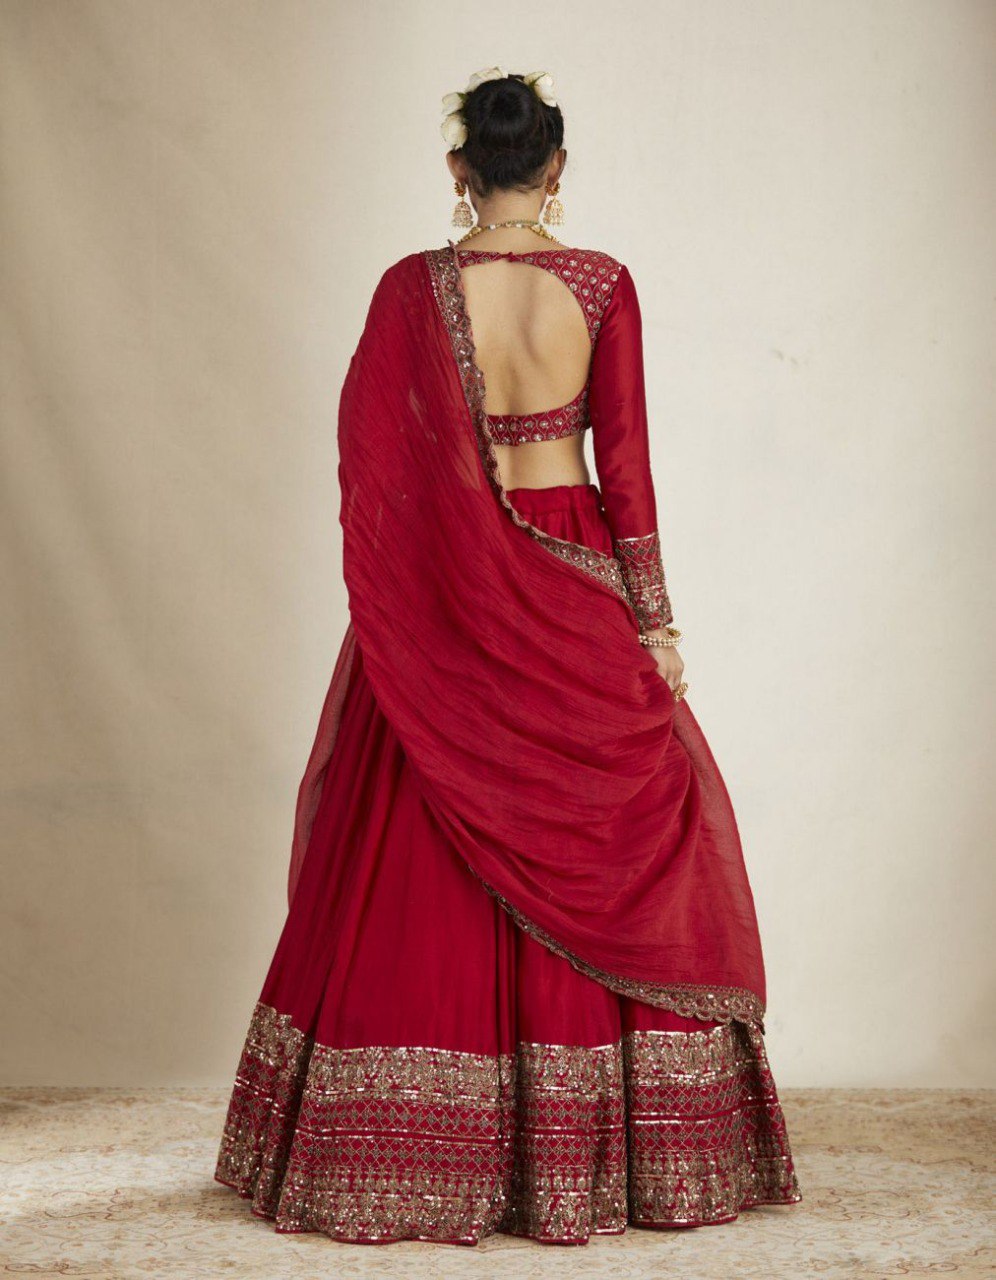 dupatta draping styles on lehenga: खूबसूरत लुक के लिए लहंगे के साथ इन  तरीकों से ड्रेप करें दुपट्टा - Hindi Boldsky